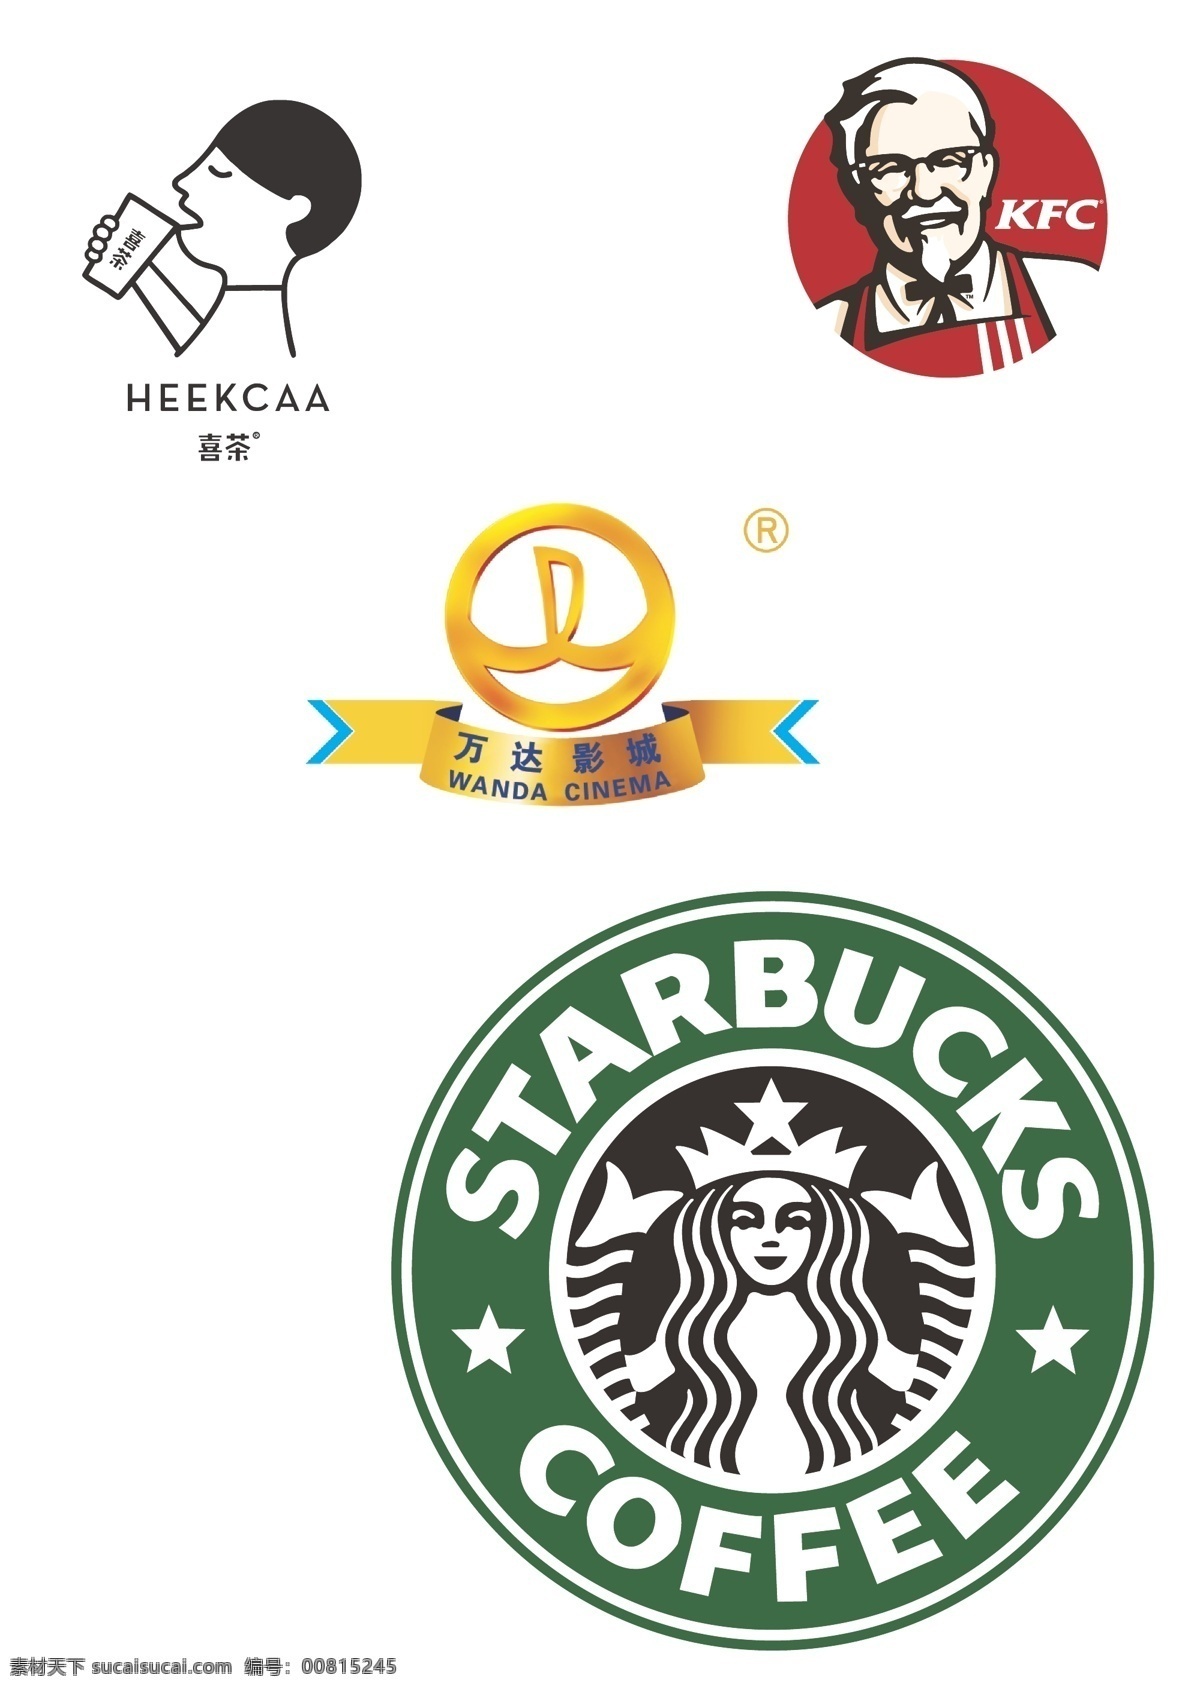 标志集合 矢量logo 喜茶logo 肯德基 logo 万达影院 星巴克 标志 ai文件 矢量 标志图标 企业